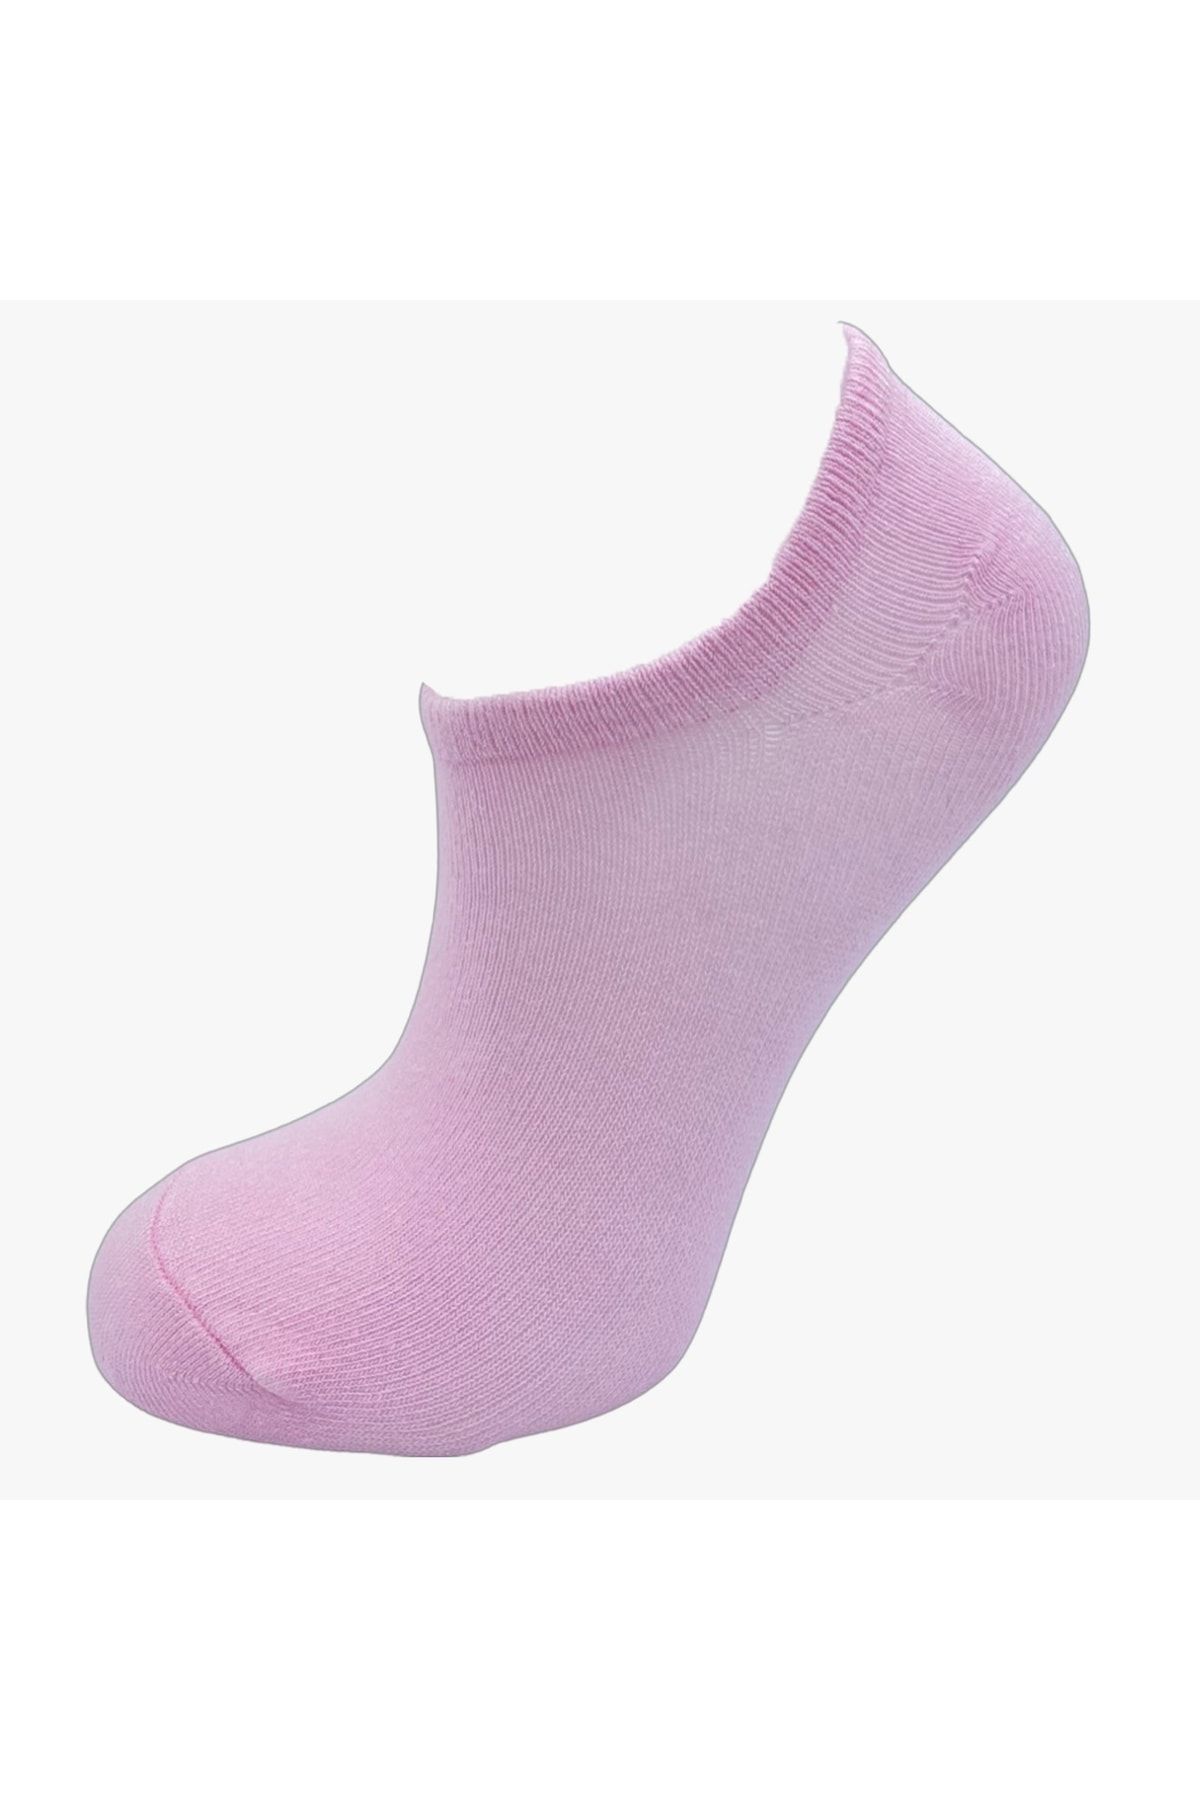 pazariz Kadın Patik Çorap 8 Li